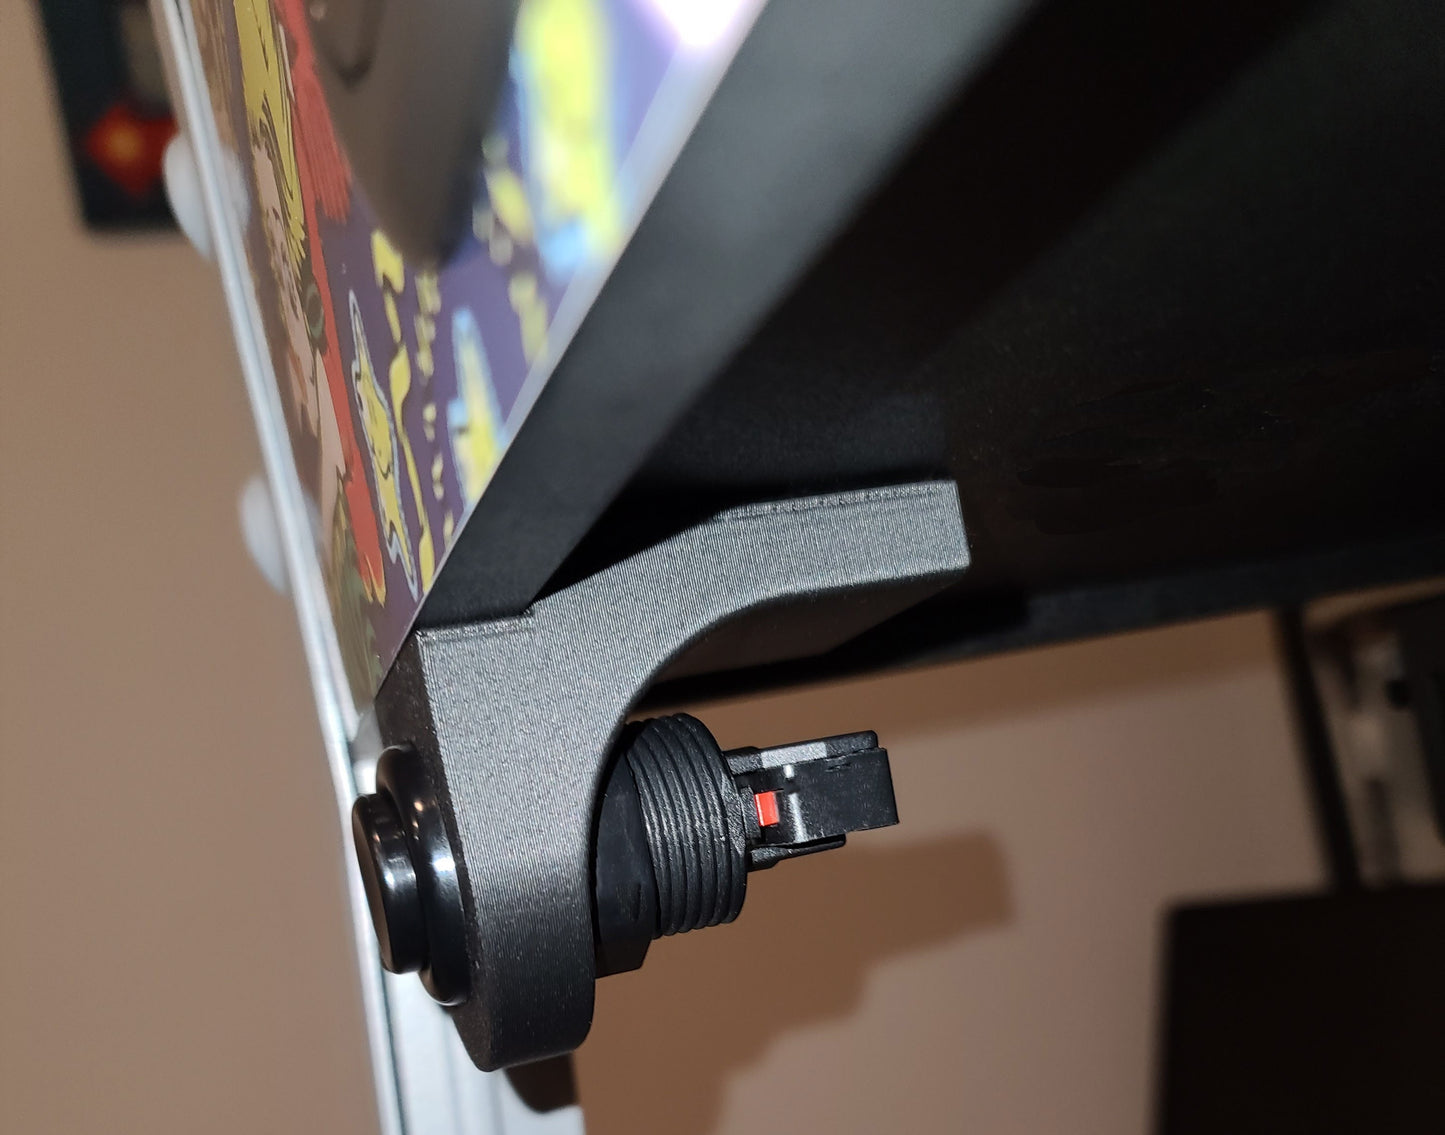 Legends Pinball VIBS Button Mounting Bracket - AT Games - Video Input Backglass Switch - ALP